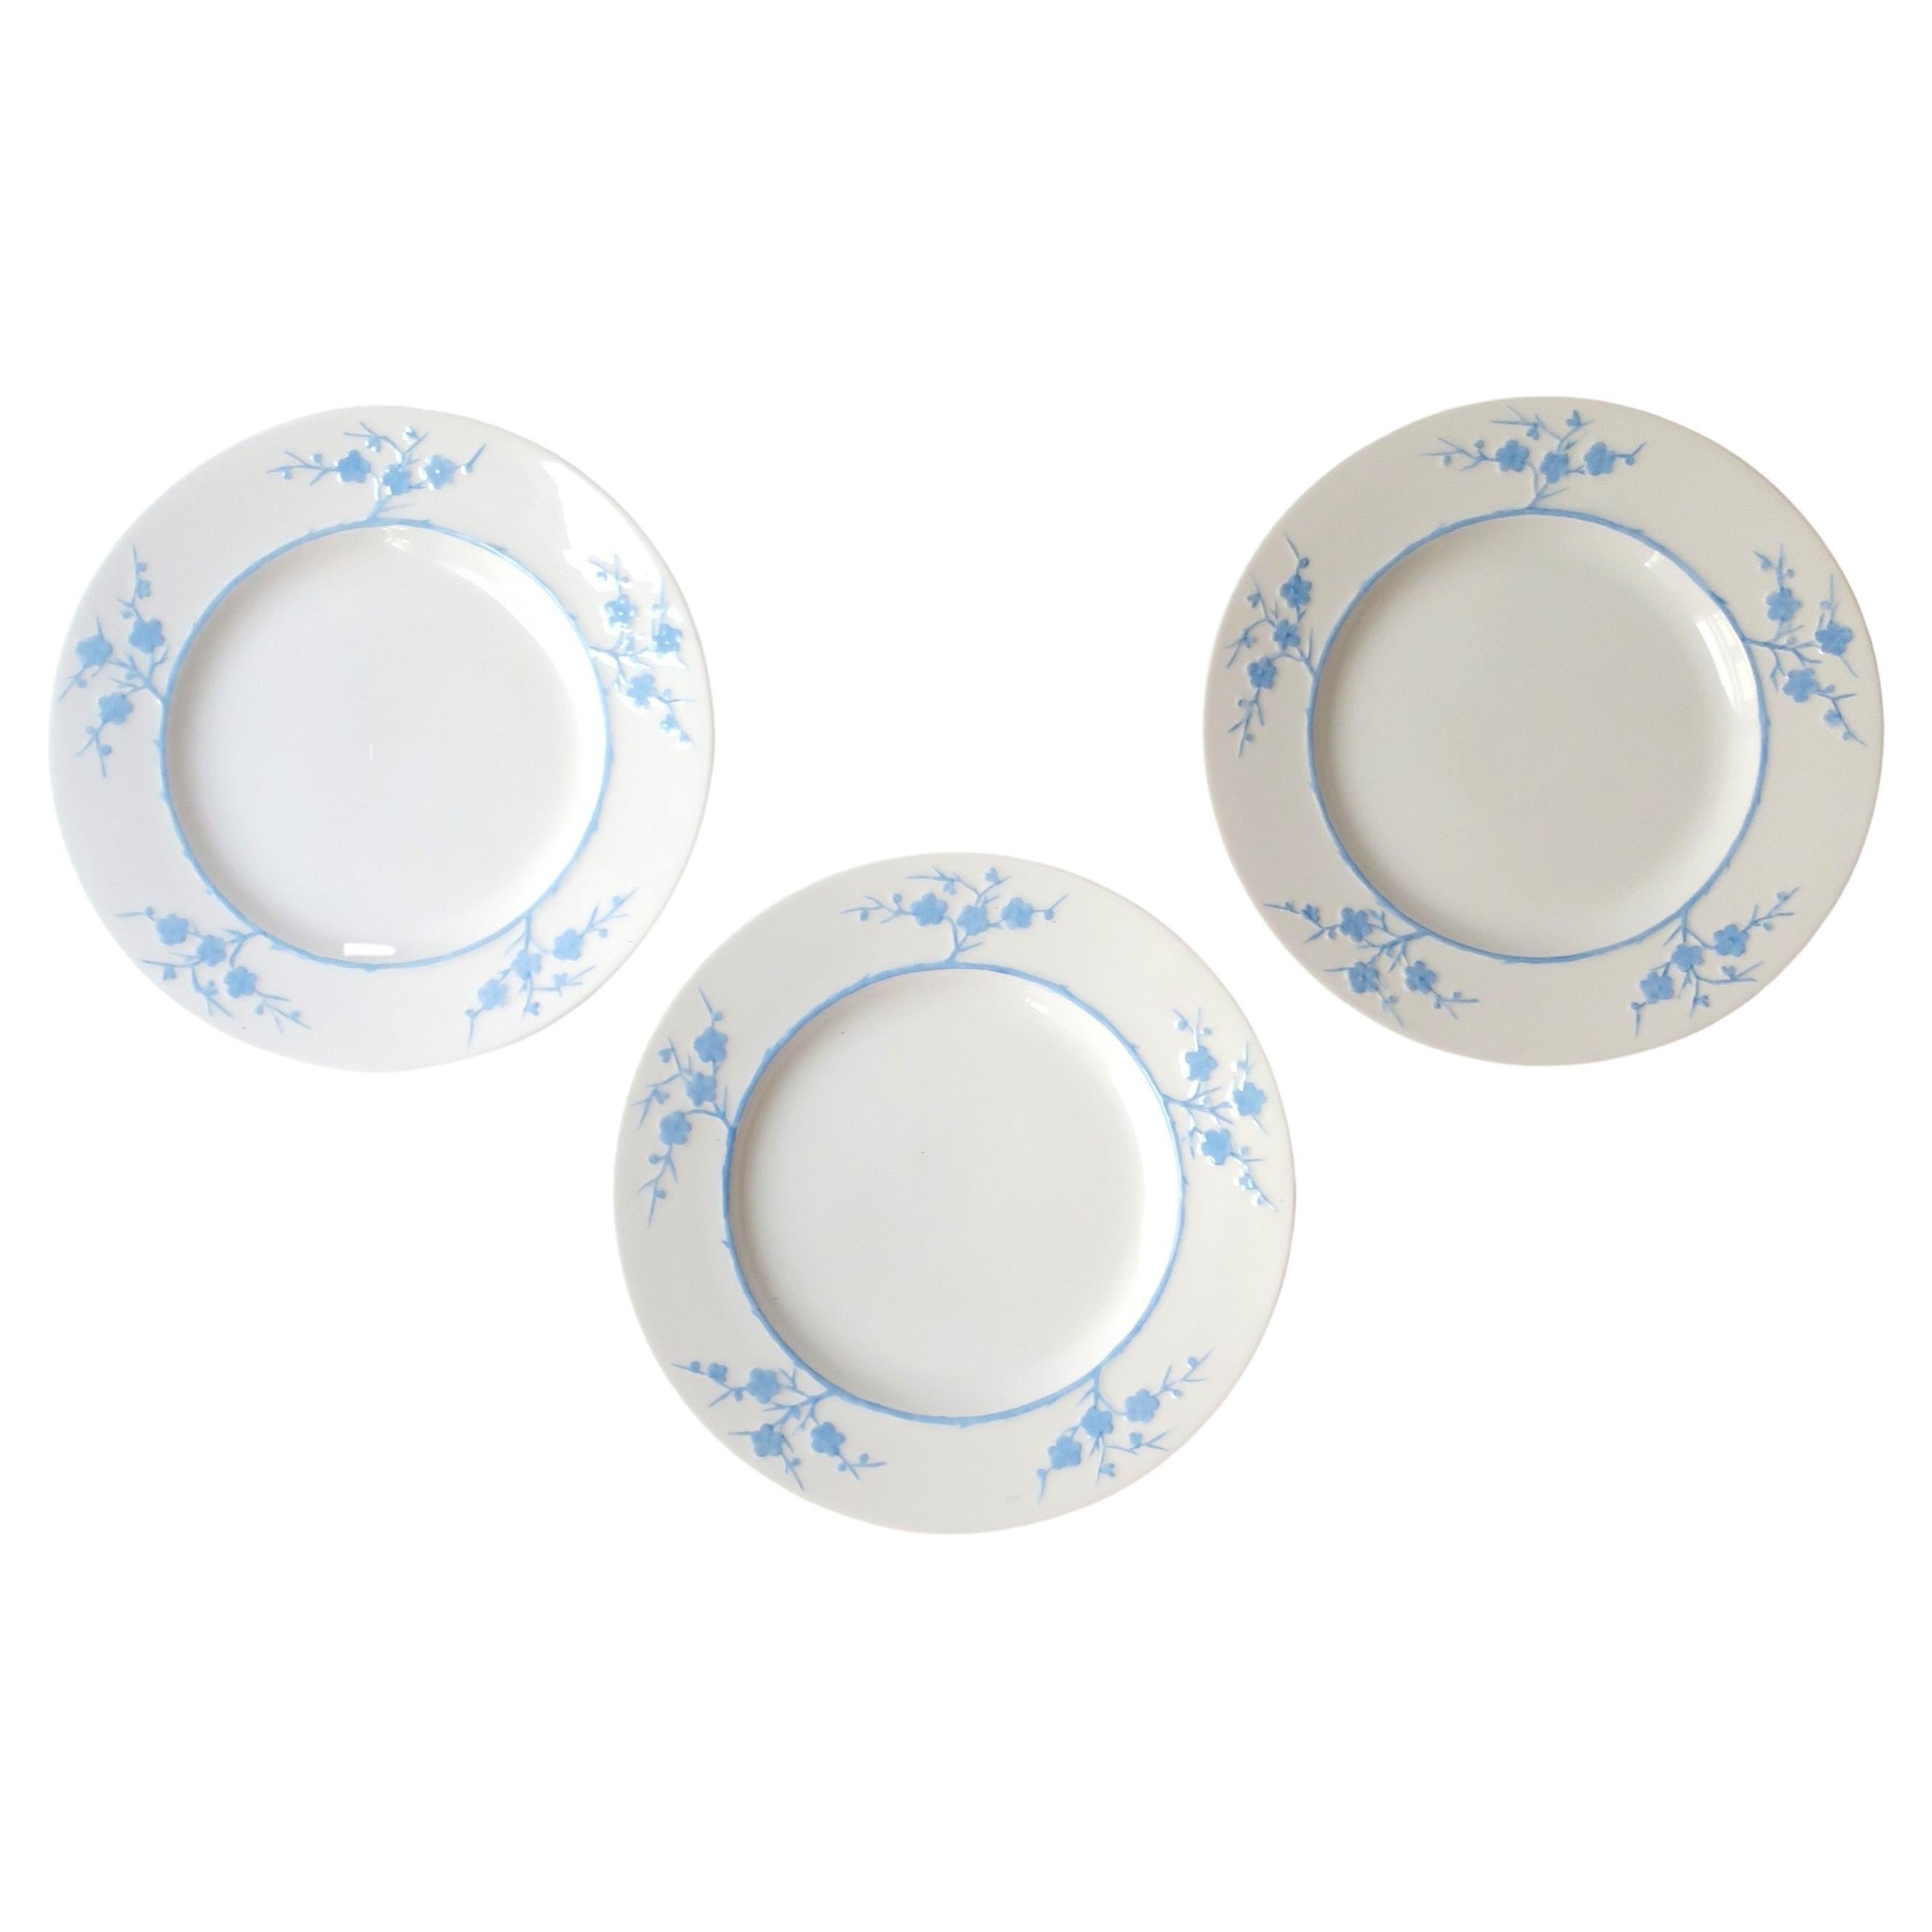 Glazed Blanche de Chine White Blue Geisha Porcelain Plates Spode Copelands, Set of 3